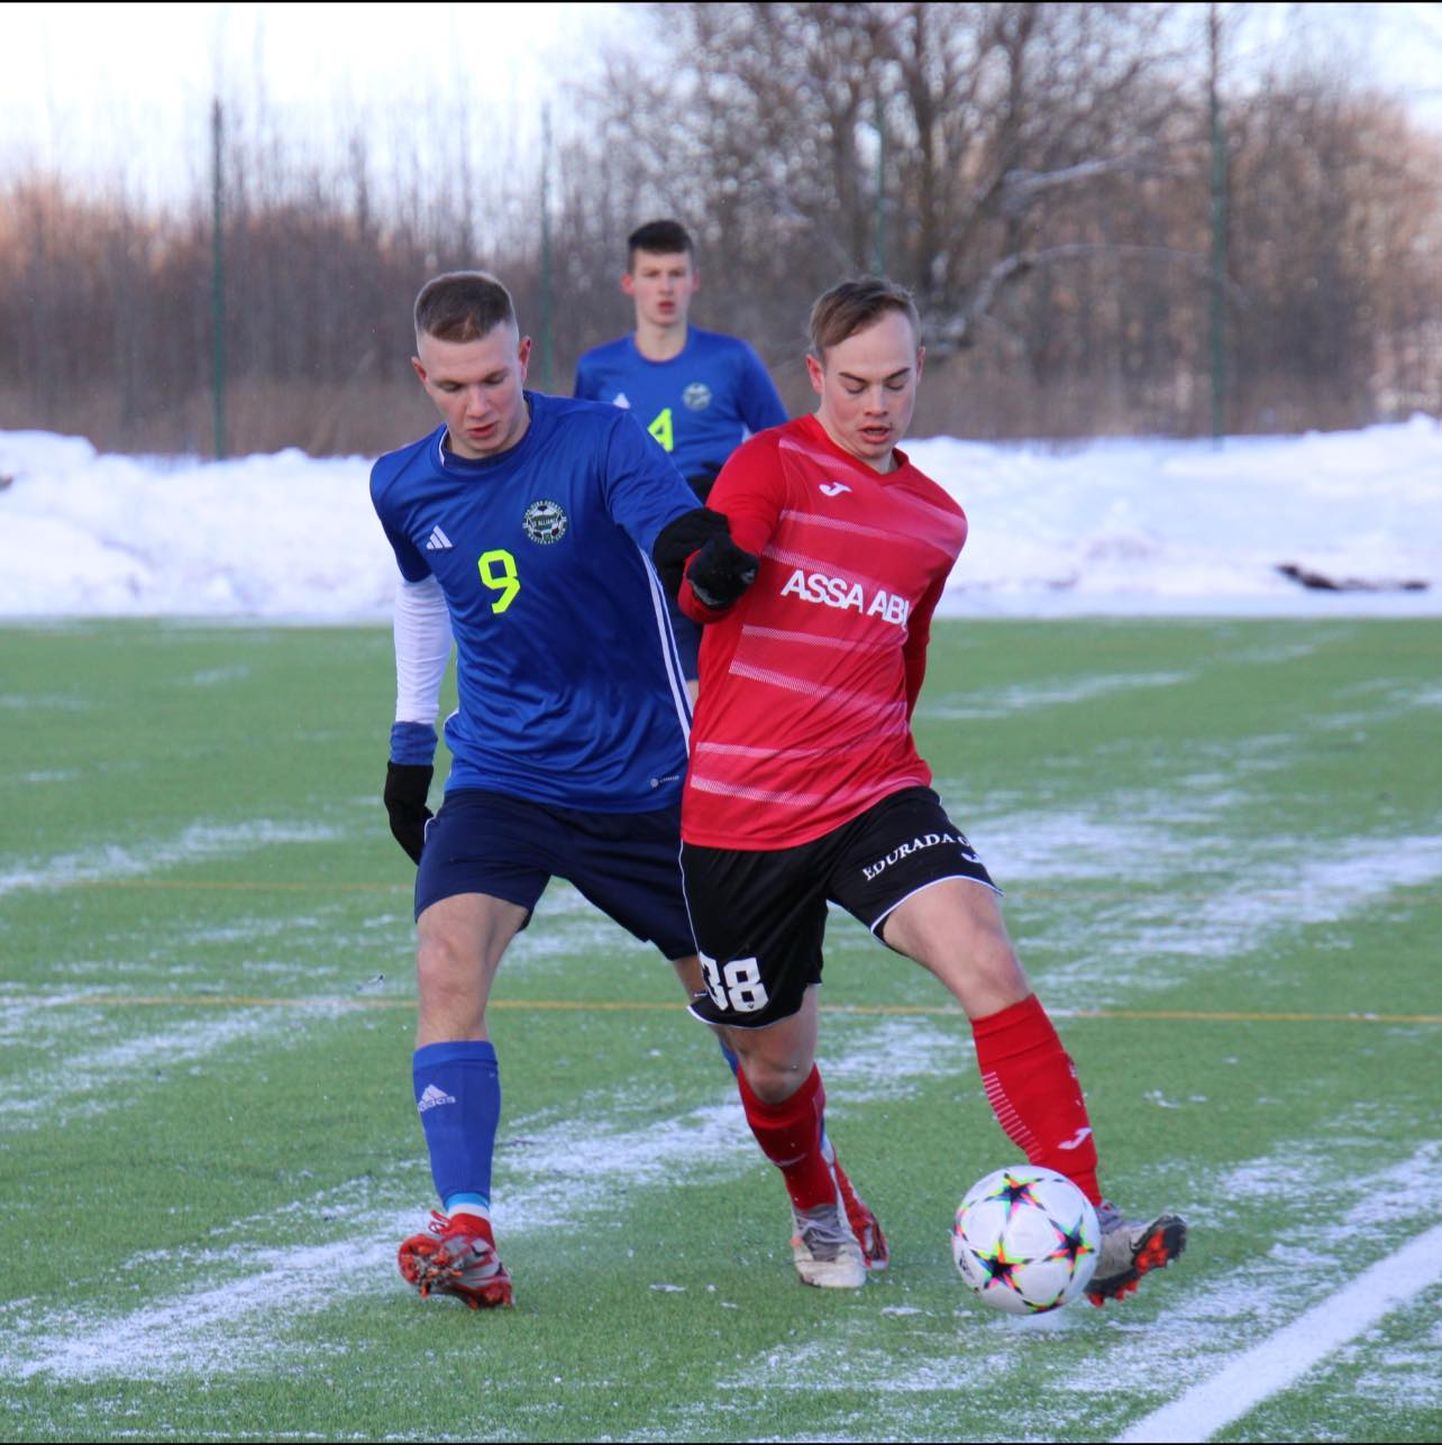 Первую домашнюю игру сезона ФК "Alliance" провел против "Viimsi" в Кивиыли в очень зимних условиях.